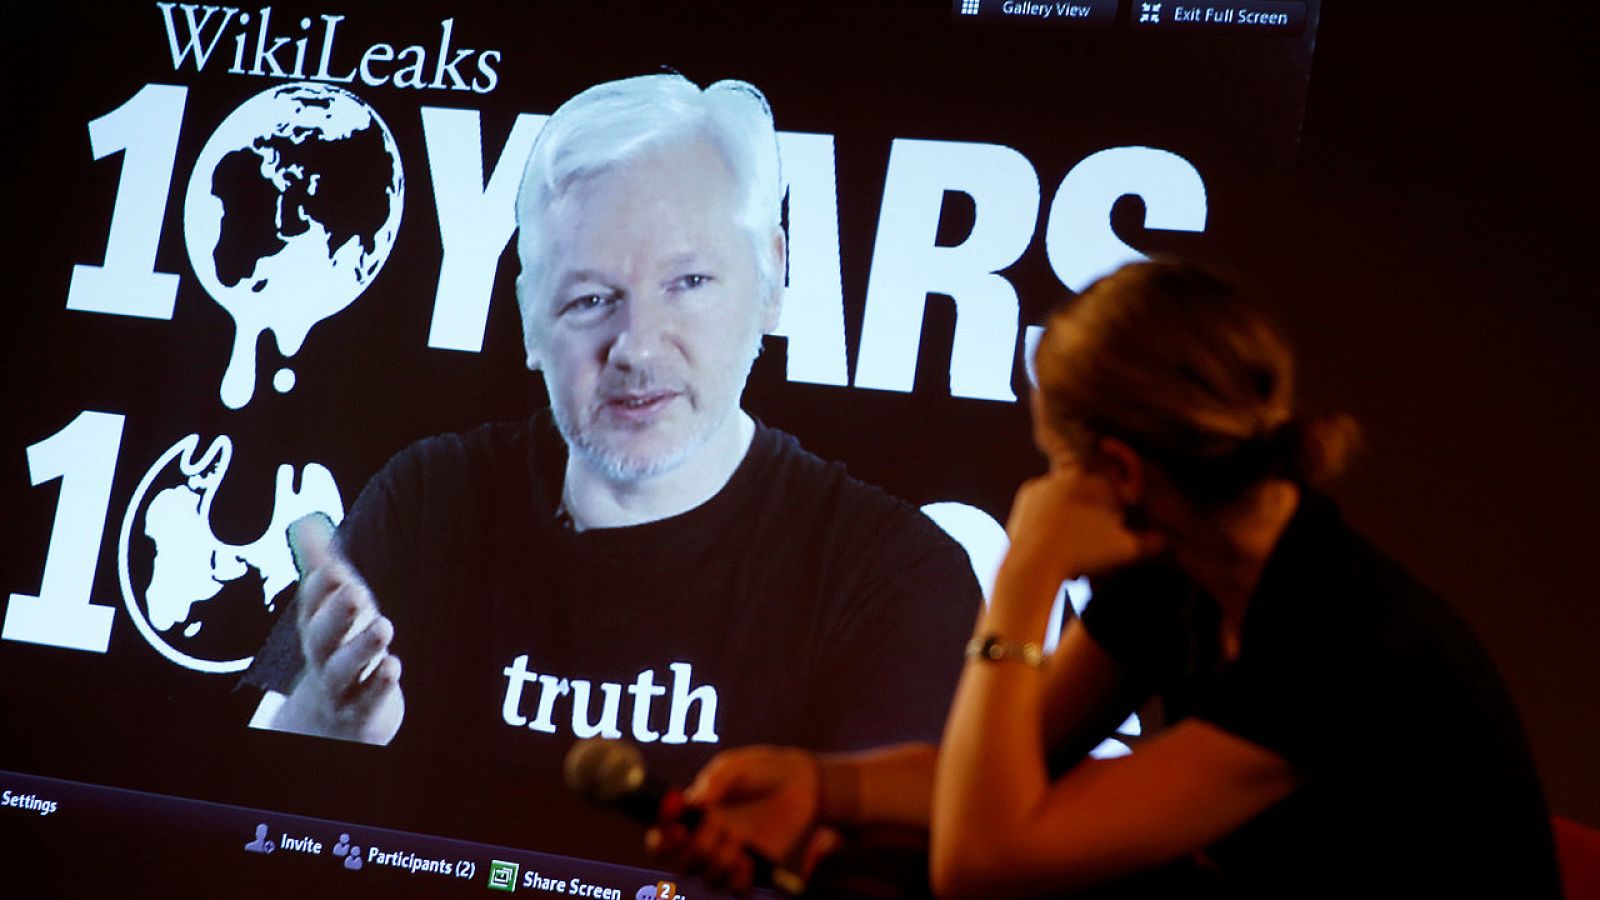 Julian Assange, fundador de Wikileaks, participa por videoconferencia en una rueda de prensa celebrada en Berlin con motivo del décimo aniversario de la fundación del grupo, en Berlín, el 4 de octubre de 2016. REUTERS/Axel Schmidt